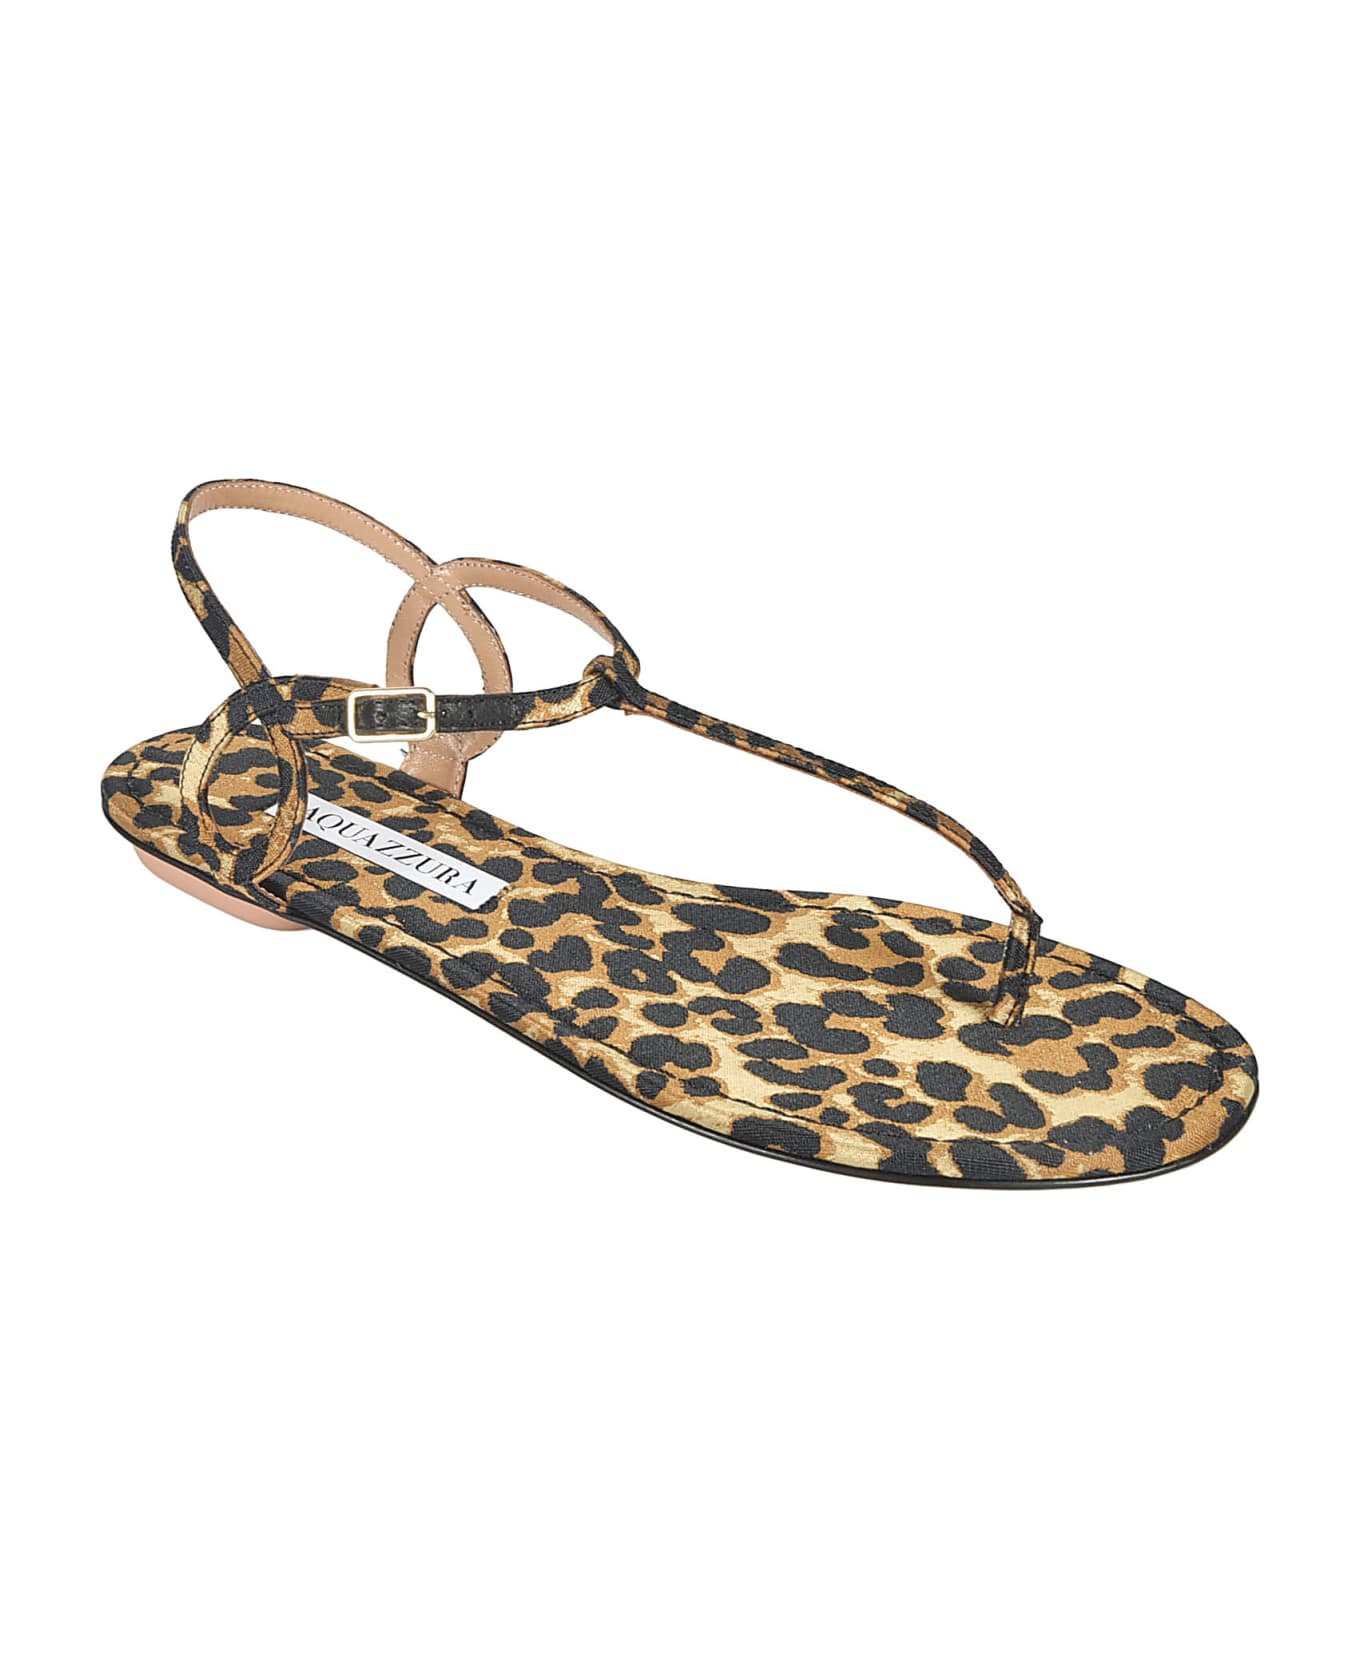 Aquazzura Leopard Bare Flat Sandals - Caramel